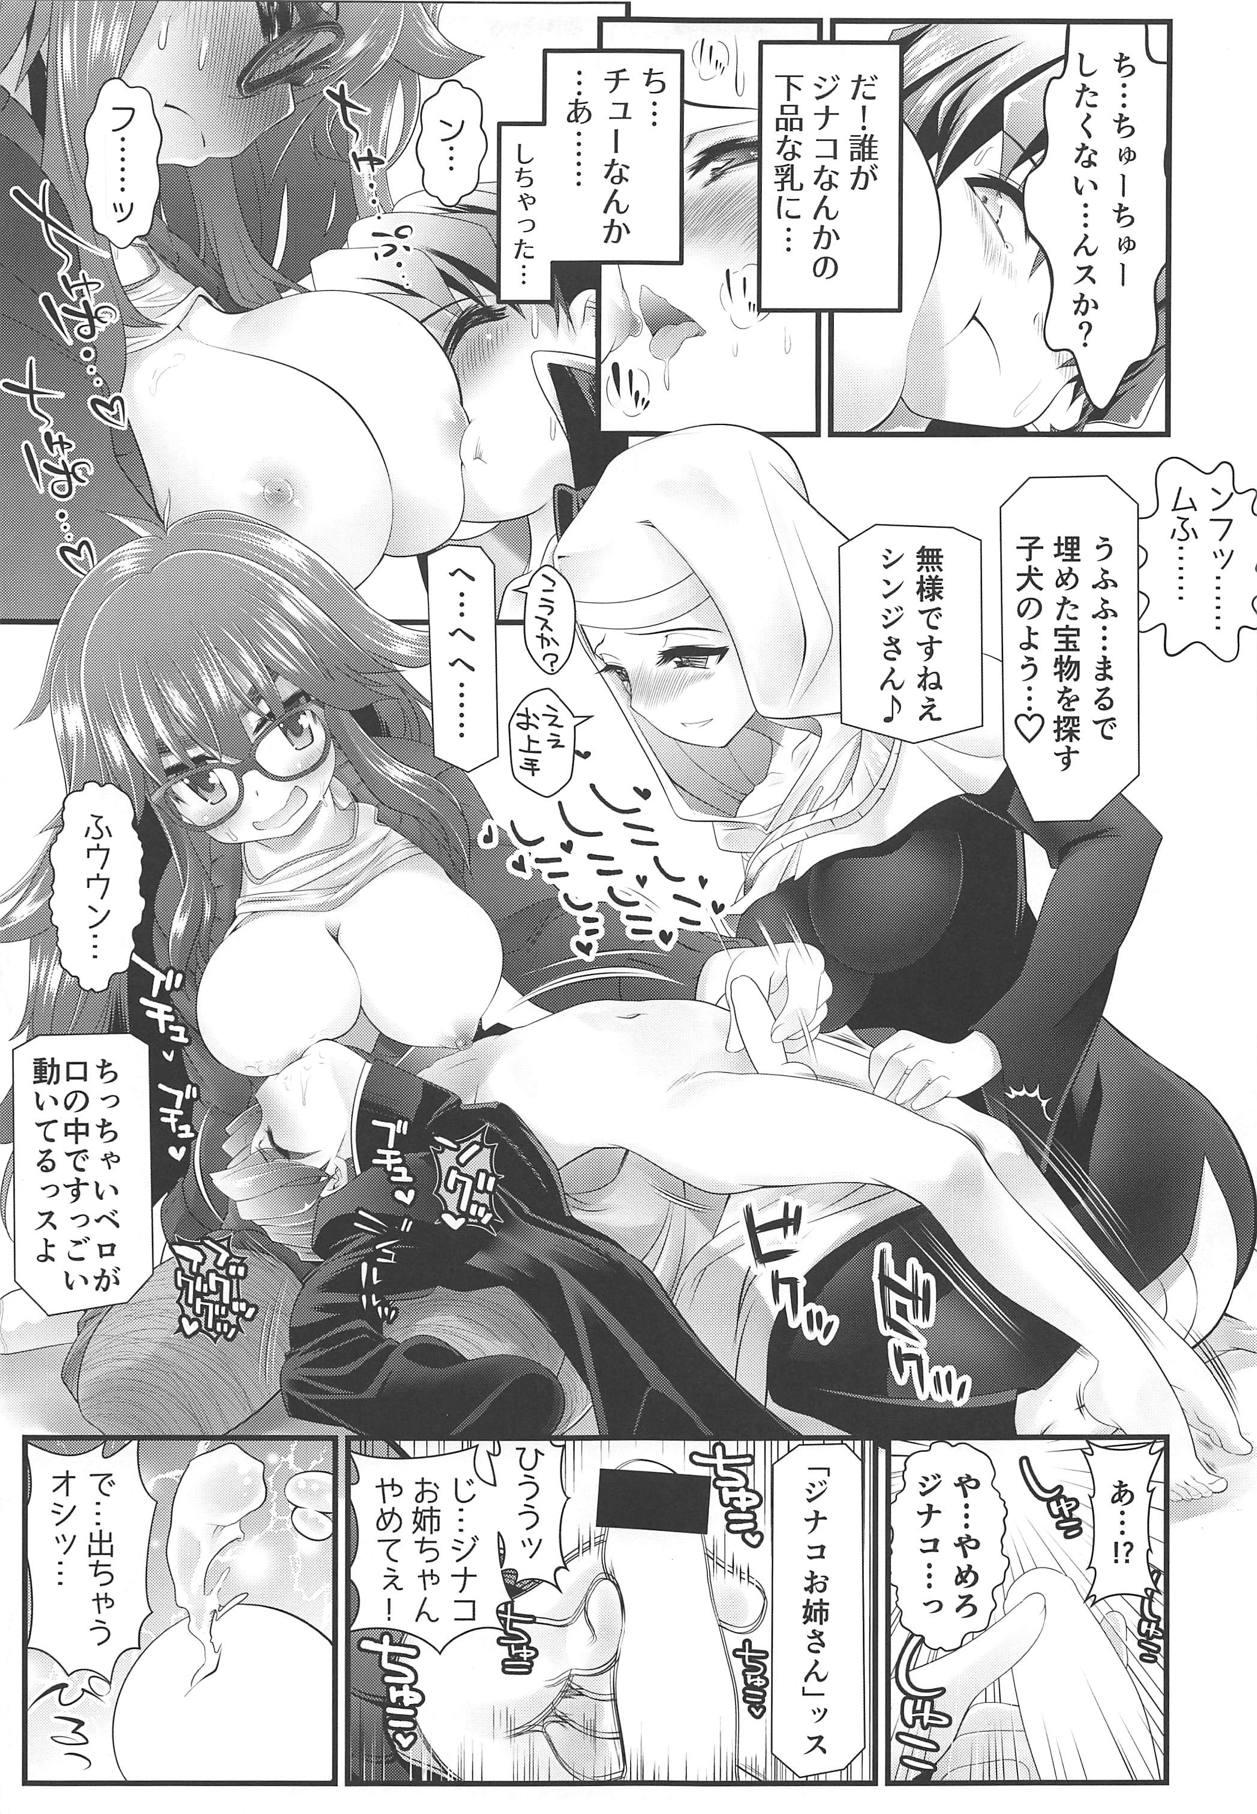 Friends Biniku to Daniku to Wakame no Hon - Fate extra Strange - Page 8